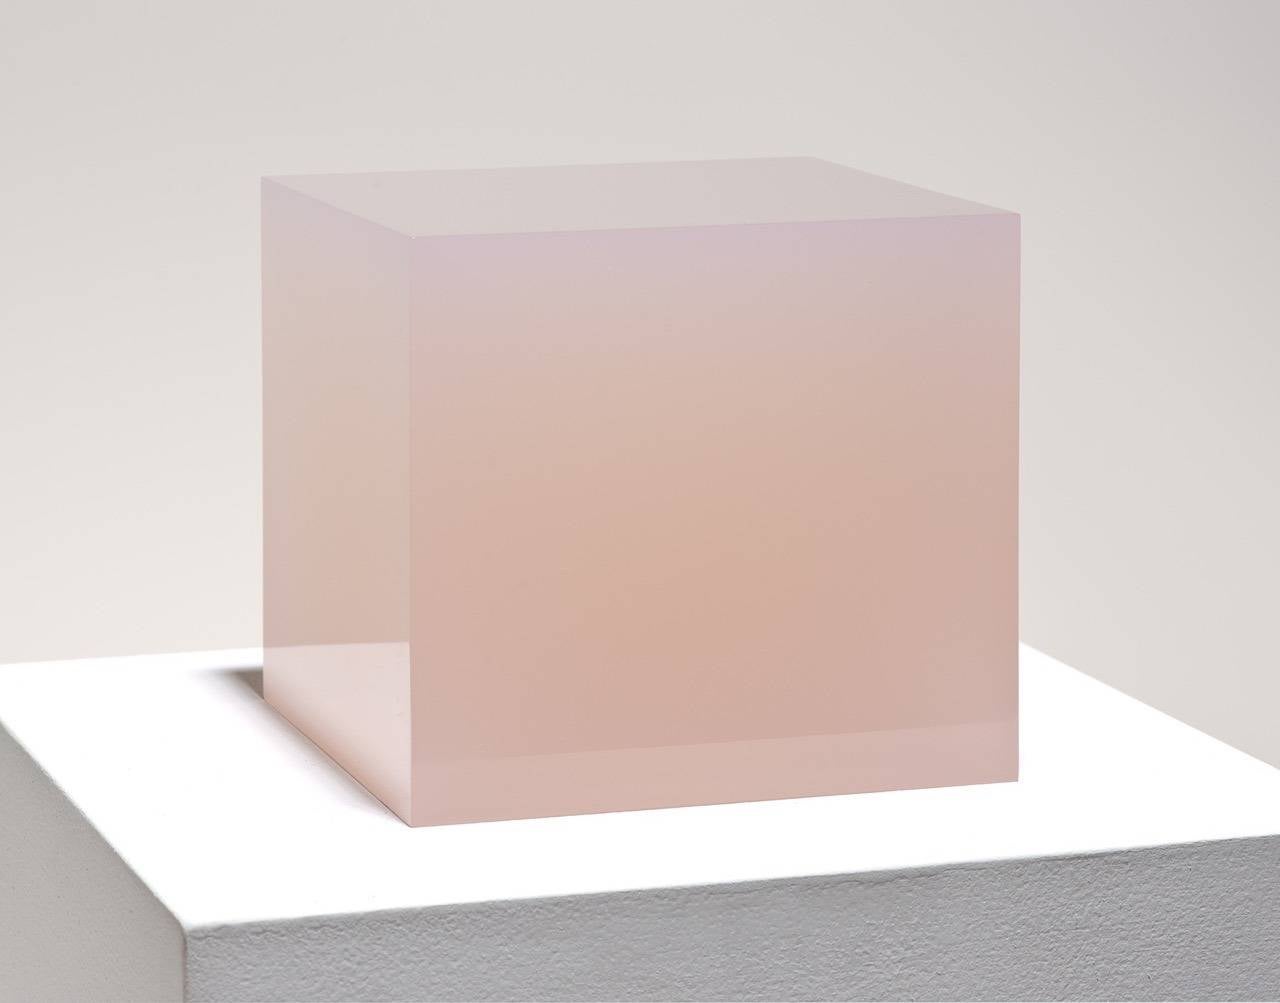 10/16/14 (Pink Box) - Sculpture by Peter Alexander